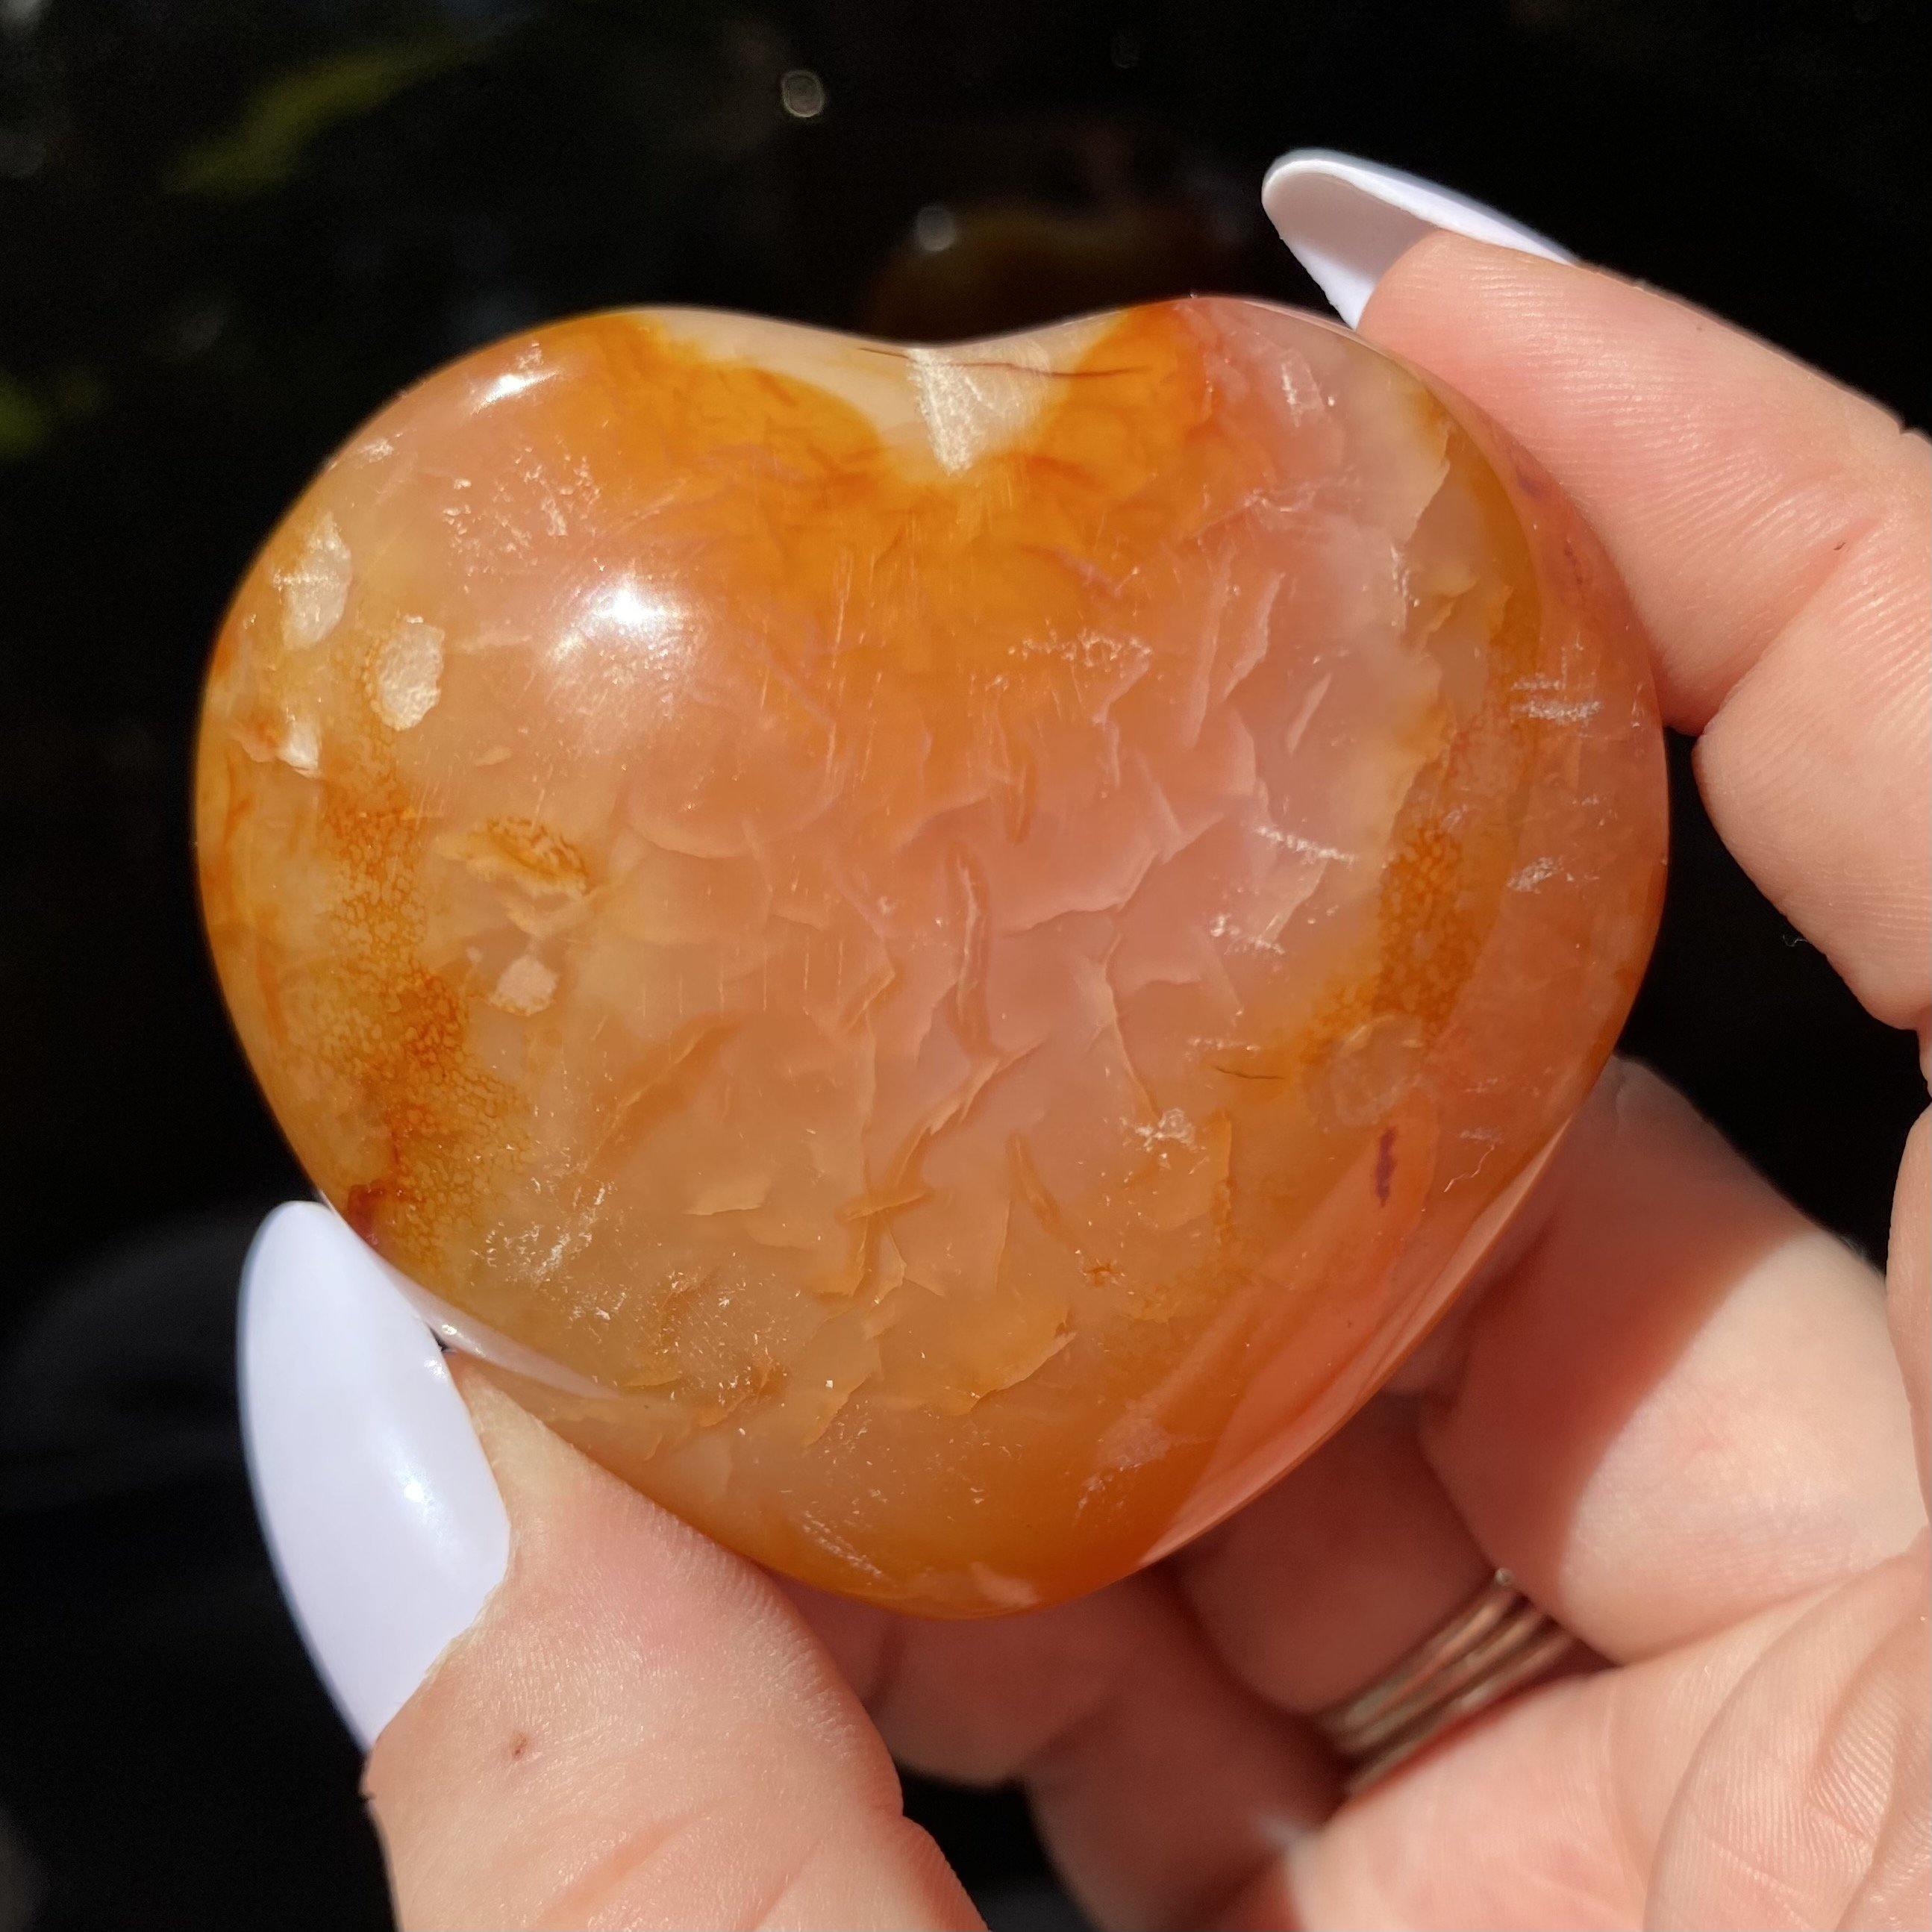 Carnelian Heart - Ruby's Minerals